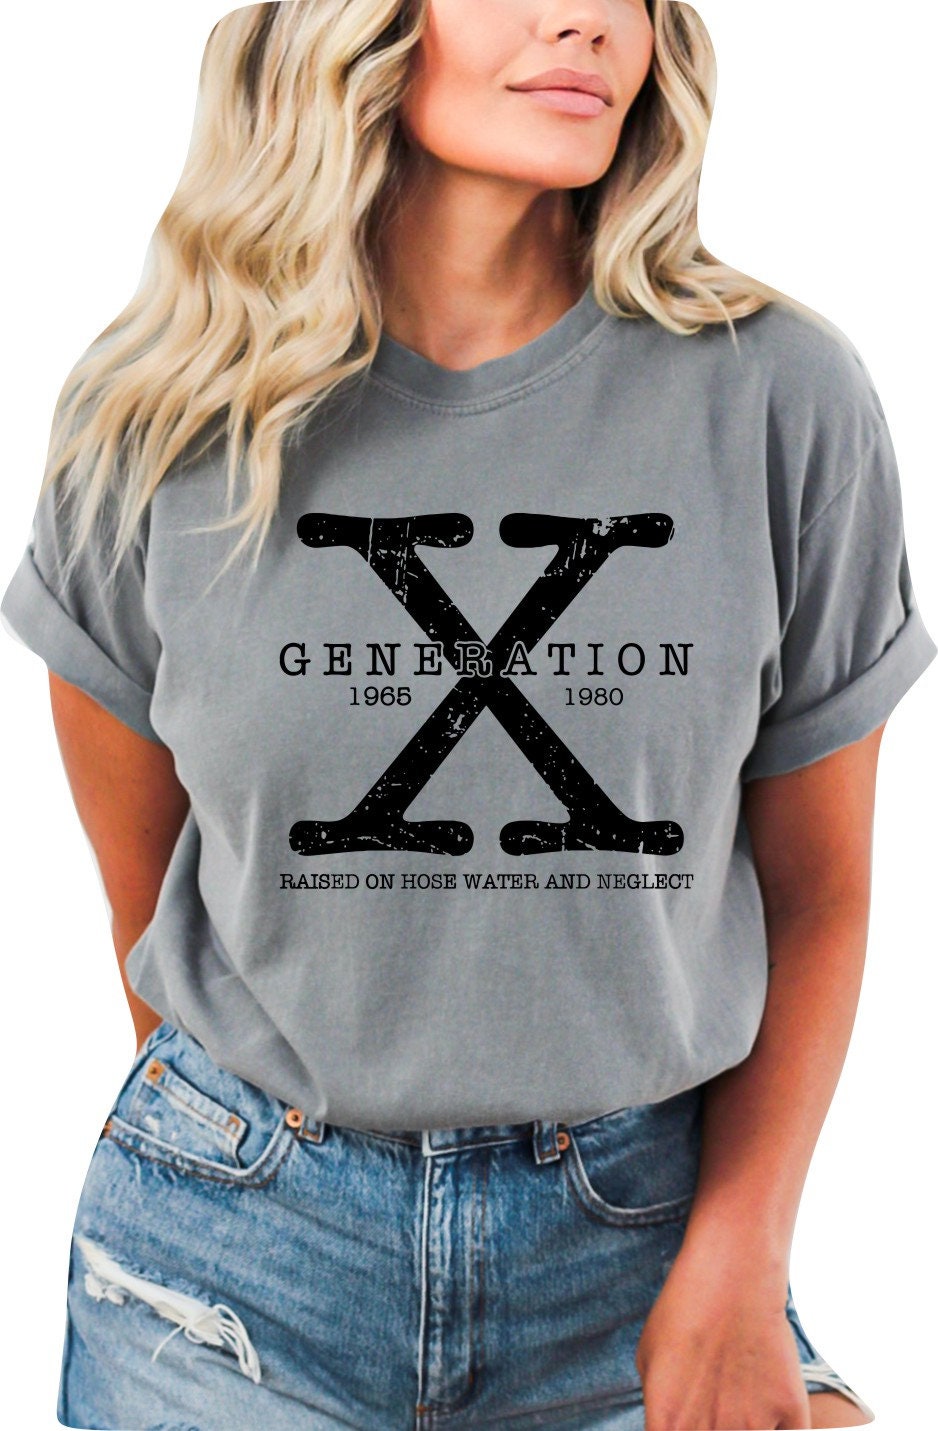 Gen X TShirt Generation X Shirt Funny TShirt Generation X T-Shirt Raised on Hose Water and Neglect Shirt Generation X T-Shirt